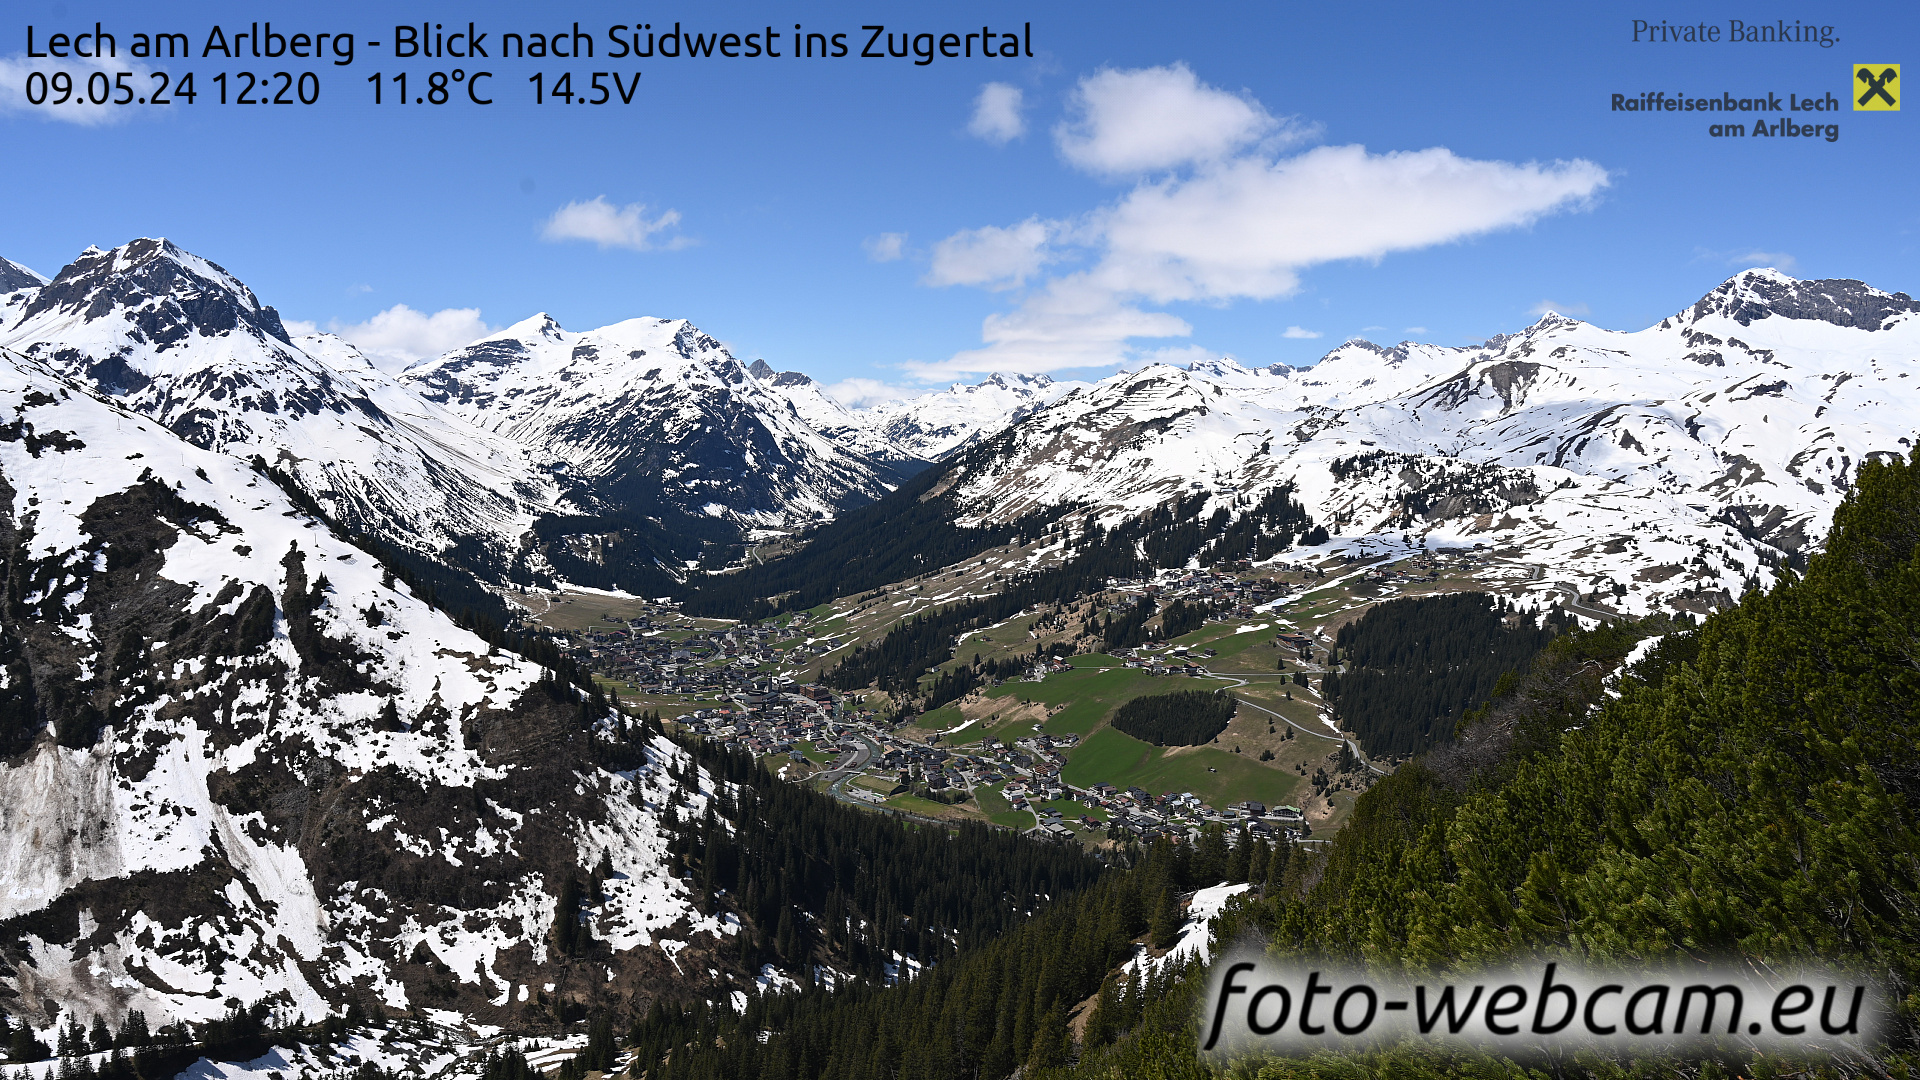 Lech am Arlberg Tue. 12:31